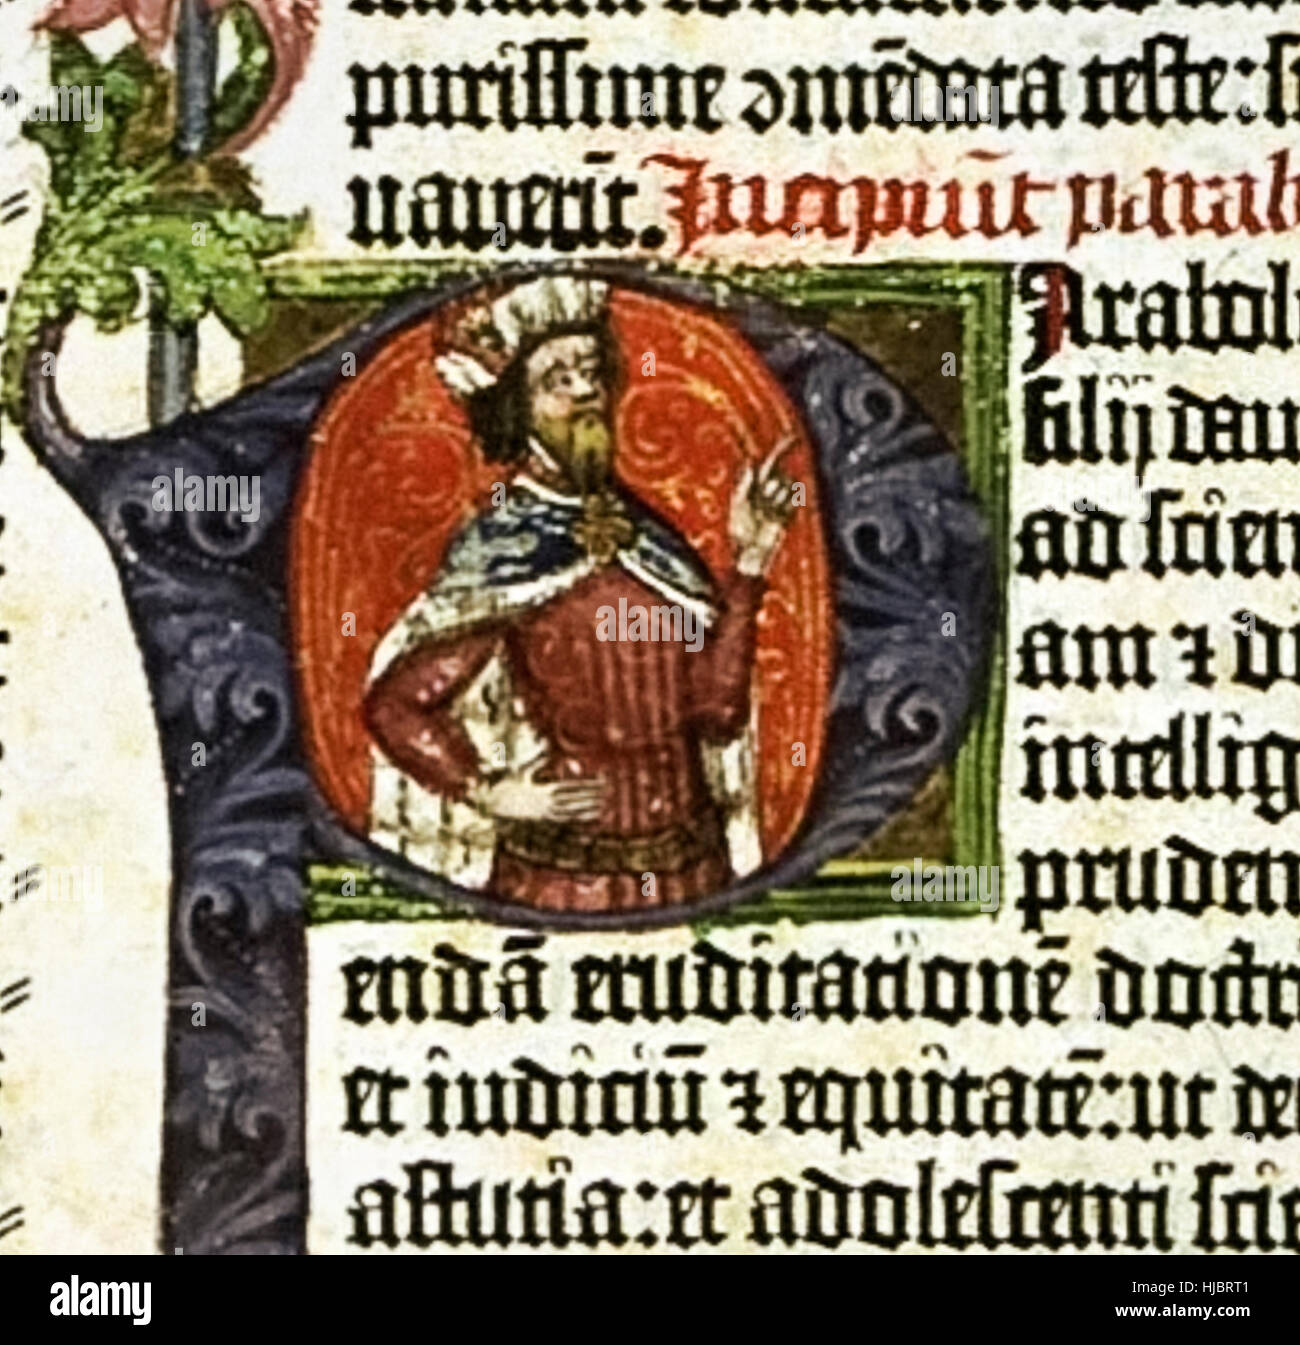 Ilumina el retrato del rey Salomón de la letra 'P' de la 'Biblia Gutenberg" producidos en masa el primer libro impreso en Maguncia, Alemania, en 1455 por Johann Gutenberg. Consulte la descripción para obtener más información. Foto de stock